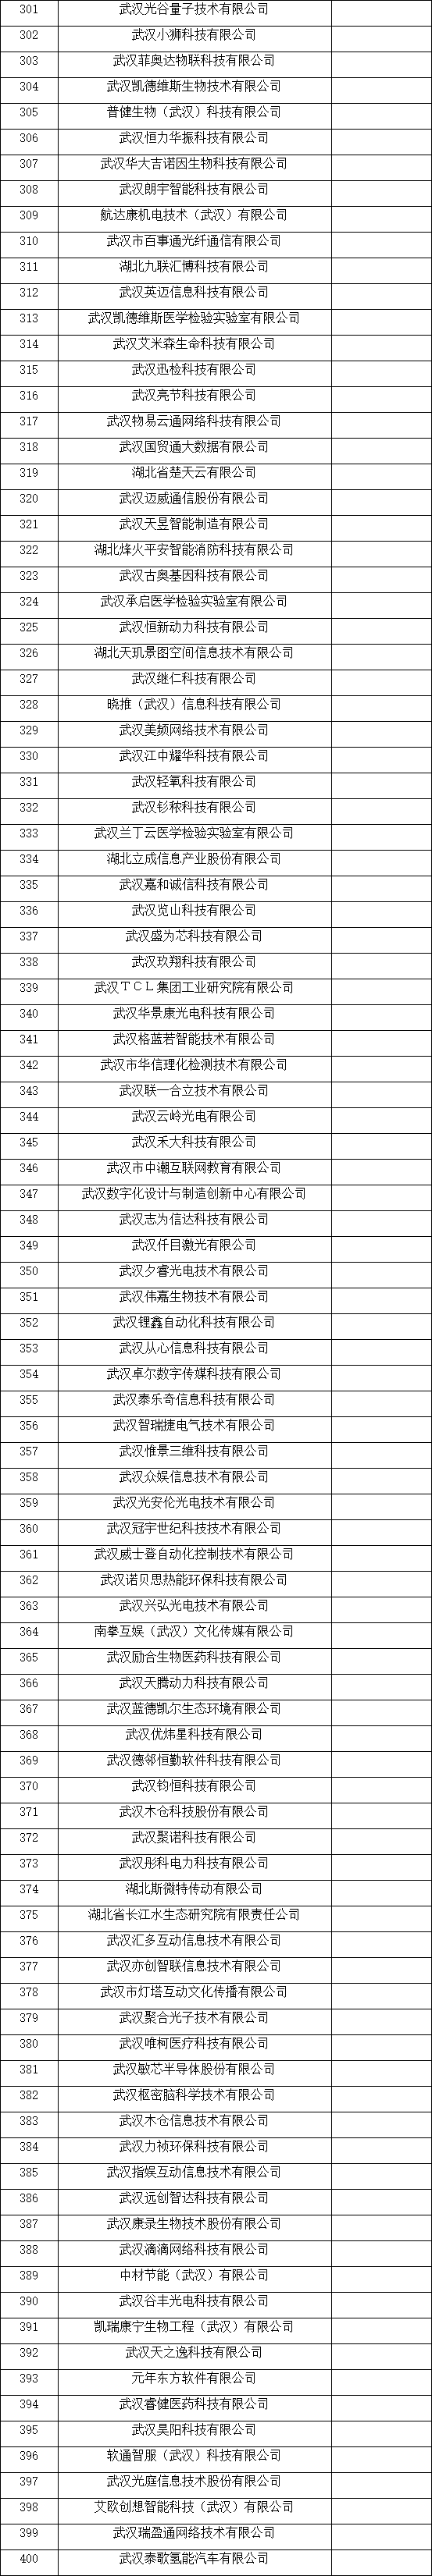 武汉市瞪羚企业名单